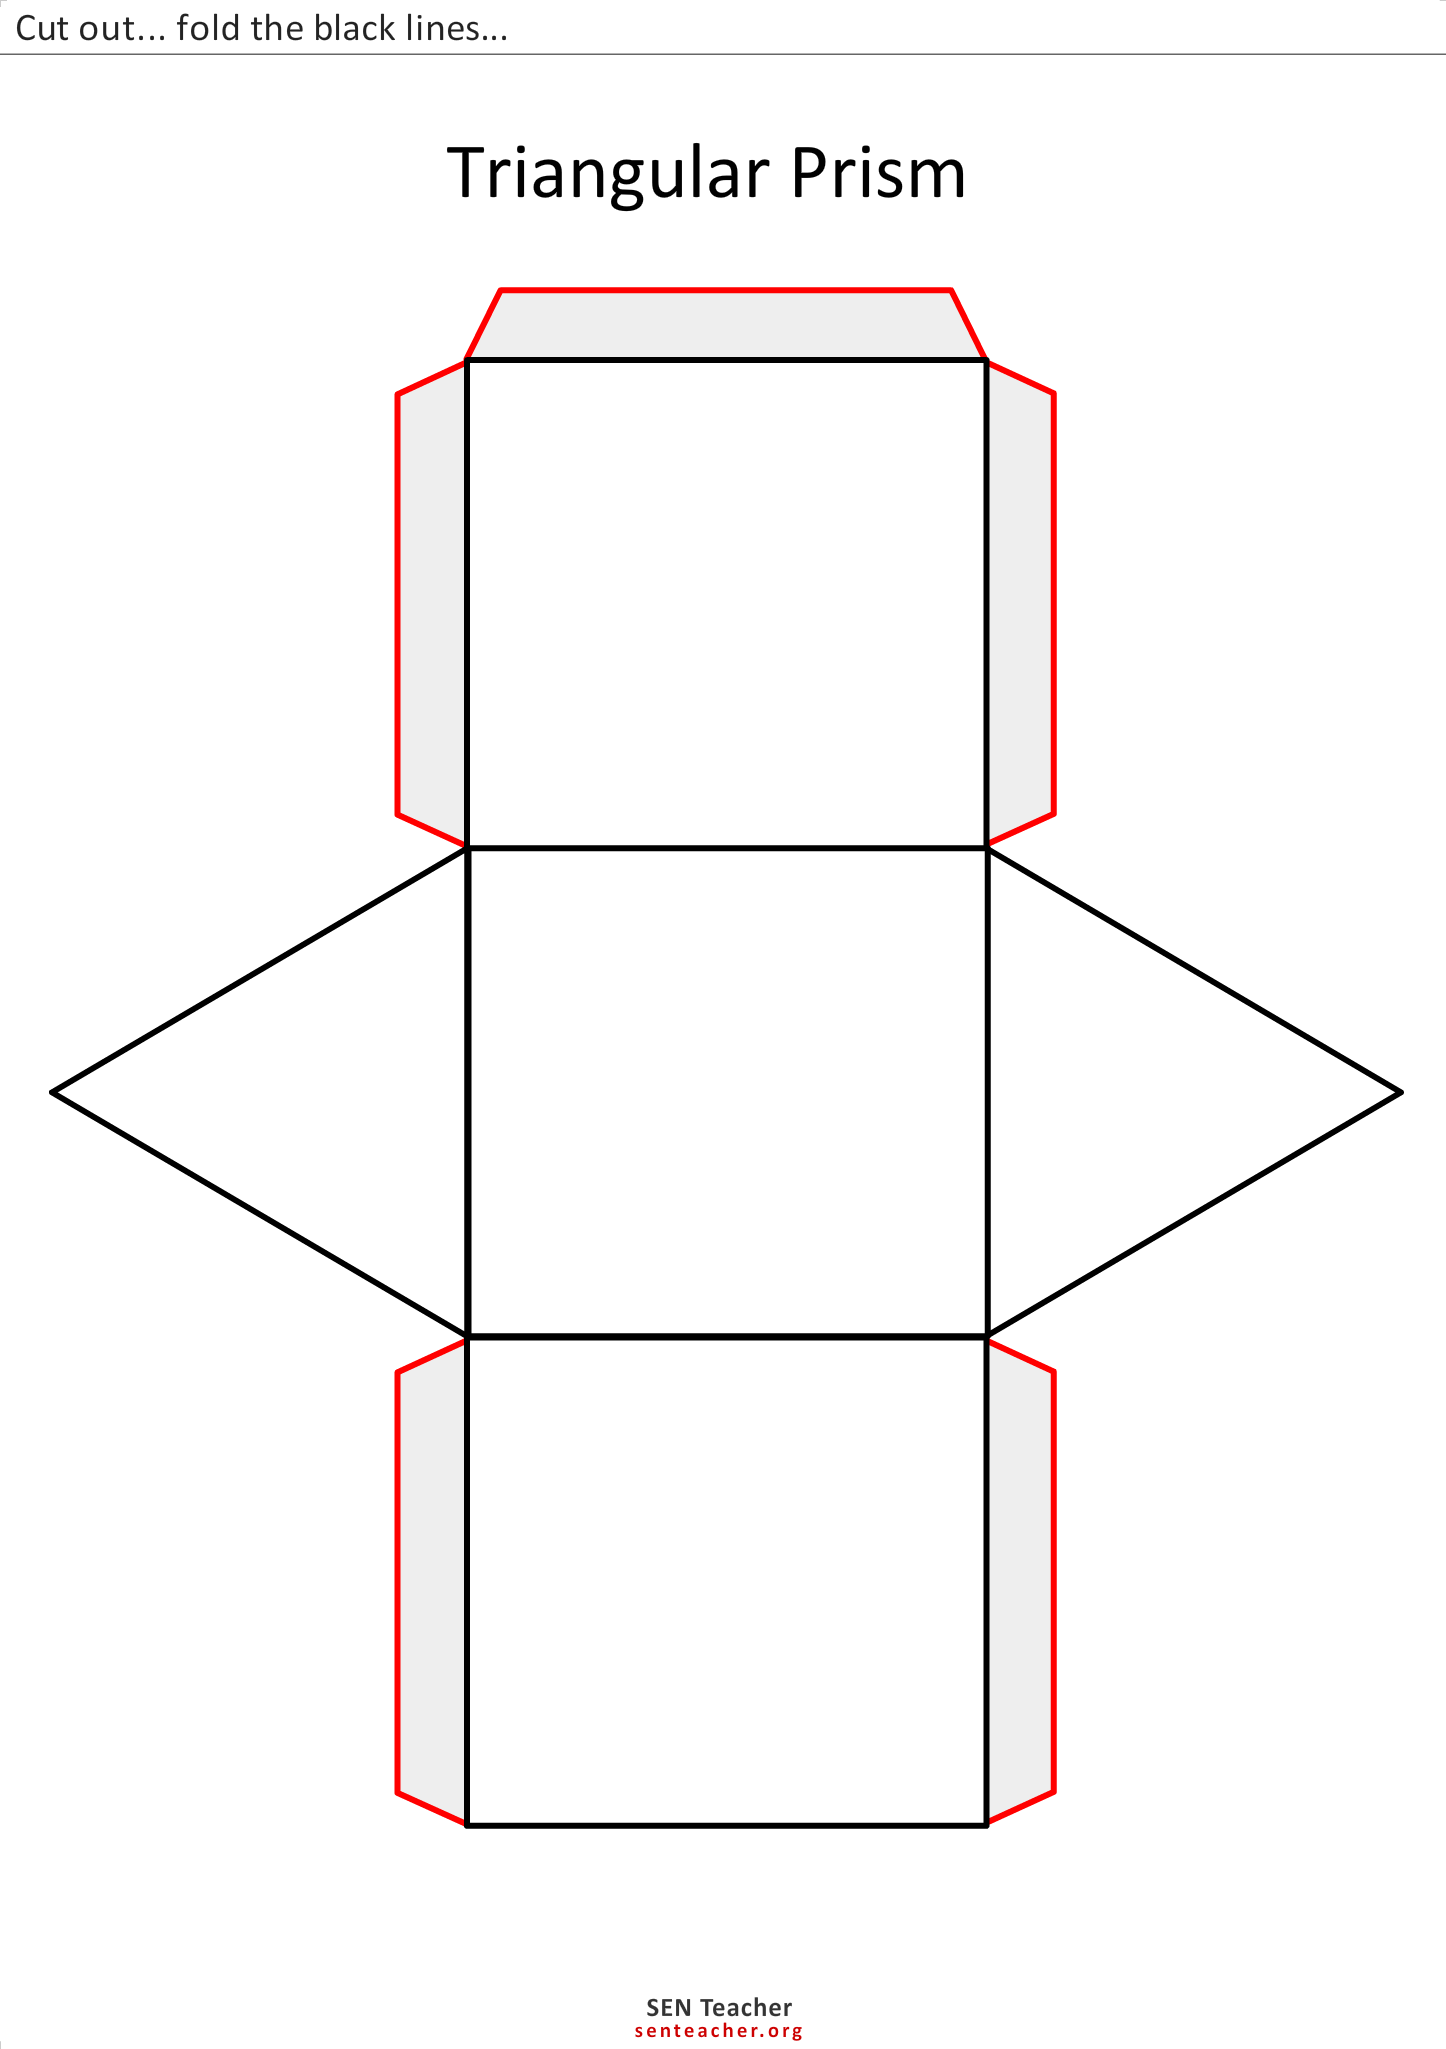 Треугольную призму приклеили к. Треугольная Призма развертка. Наклонная треугольная Призма развертка. Развёртка треугольной Призмы для склеивания. Правильные прямоугольные Призмы схемы.